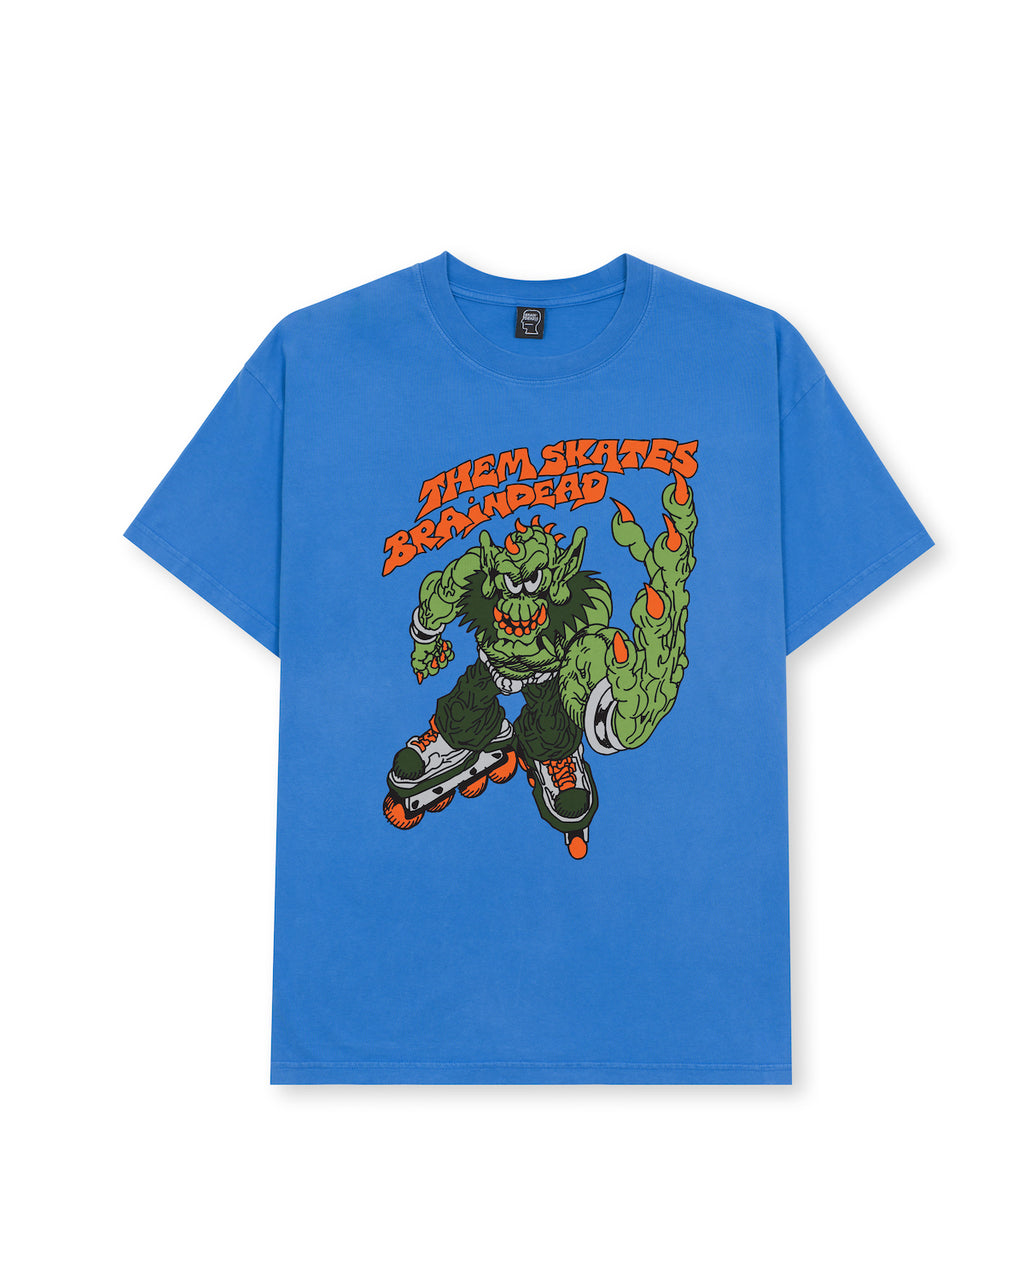 Brain Dead x Them Skates Kogan Goblin Skate T-shirt - China Blue